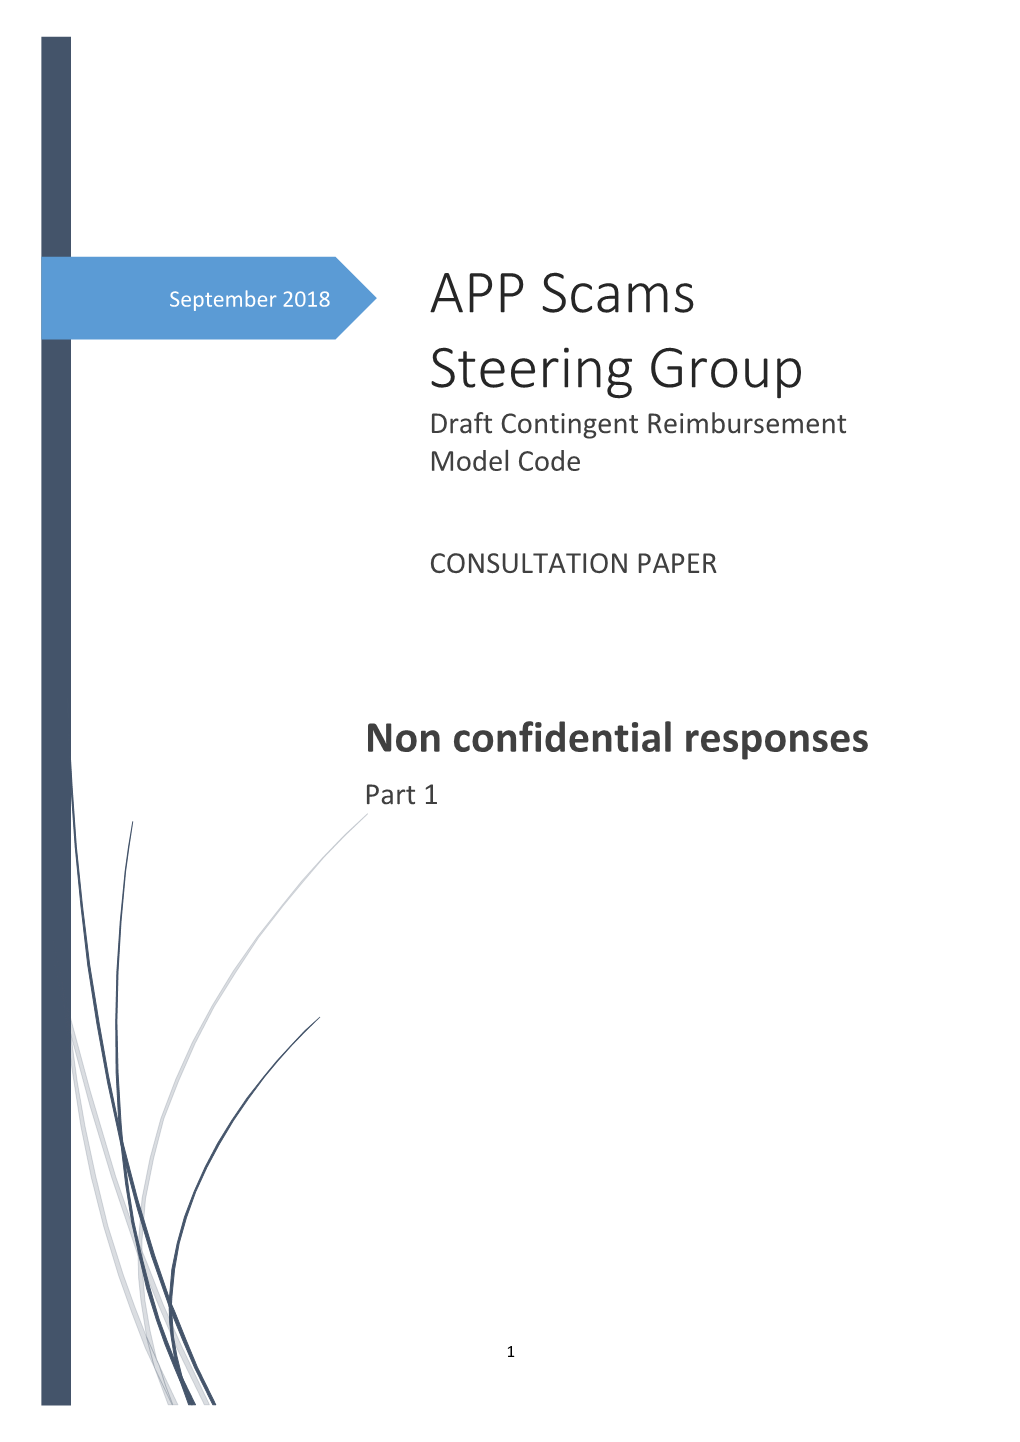 APP Scams Steering Group Draft Contingent Reimbursement Model Code